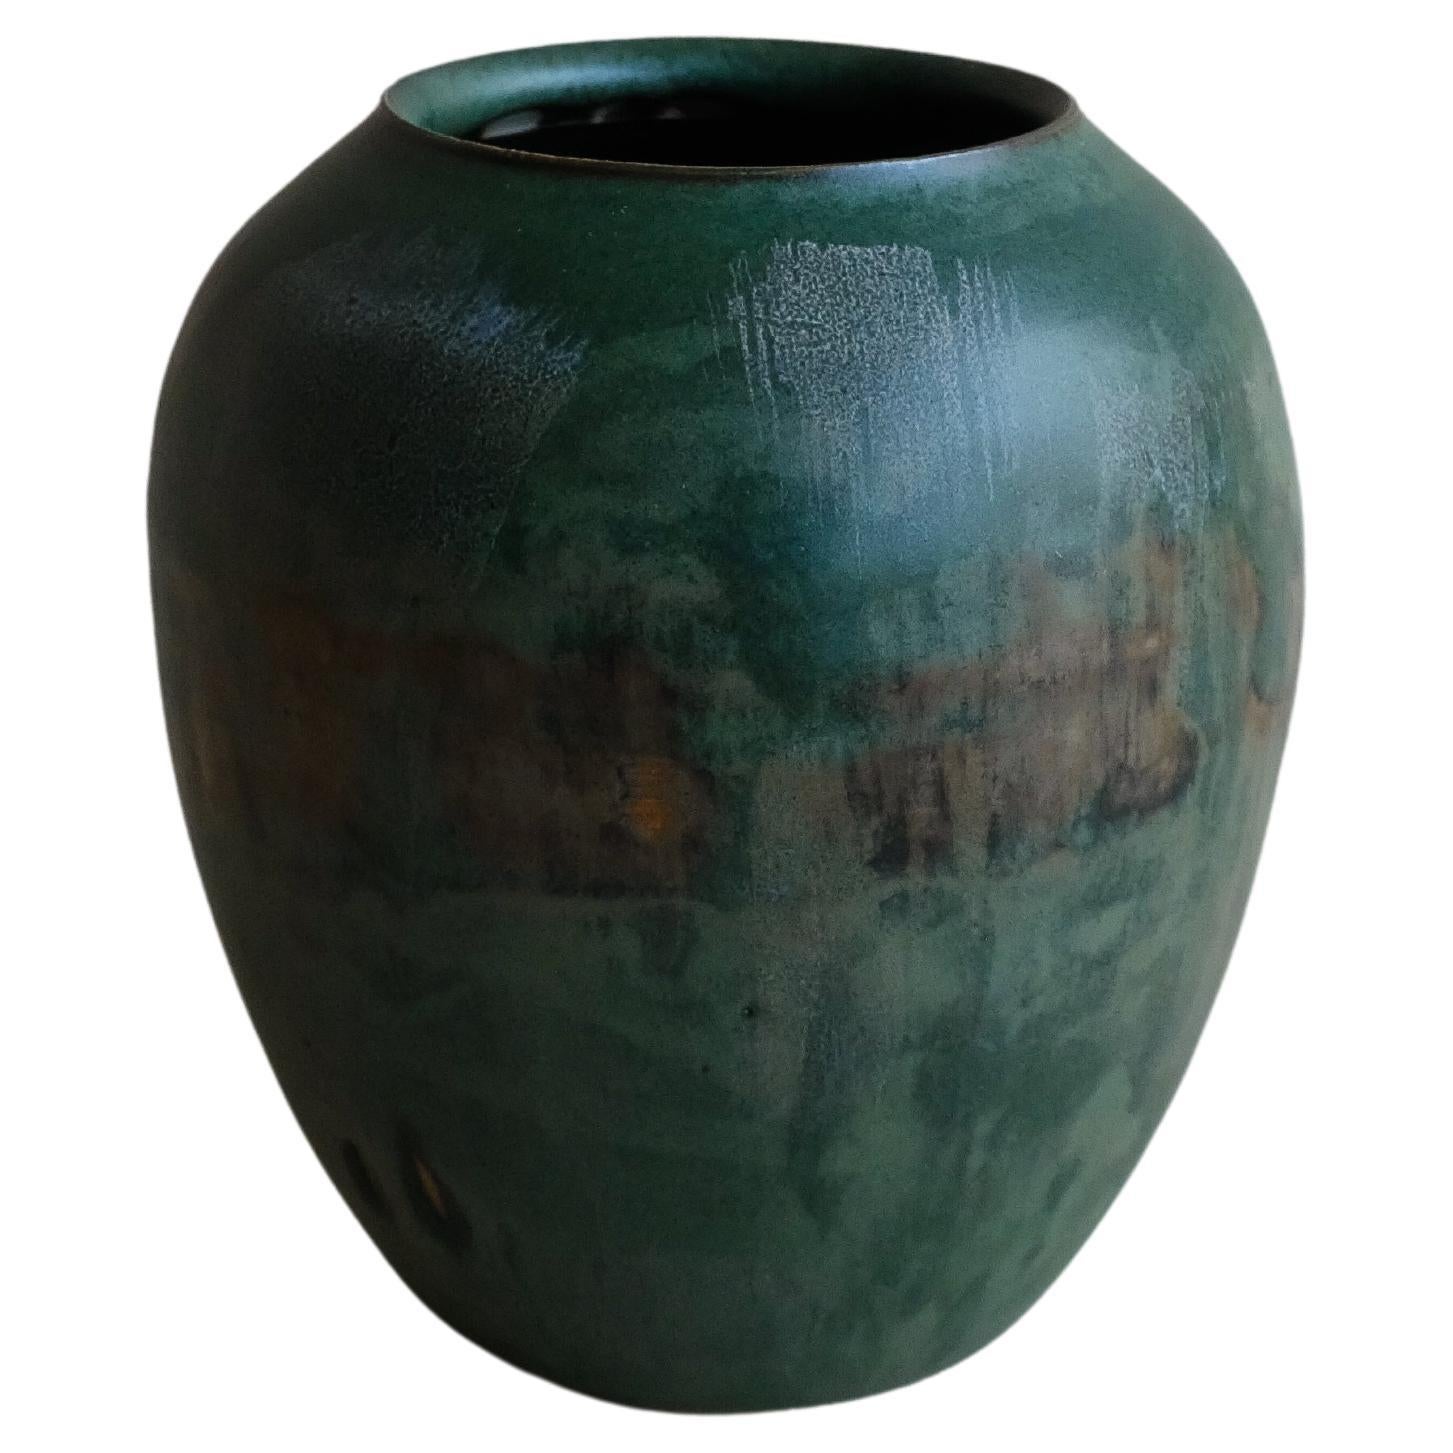 Porzellan-Keramikvase – Keramikvase mit hoher Feuergas-Glasur – Vietnamesisch – Design 